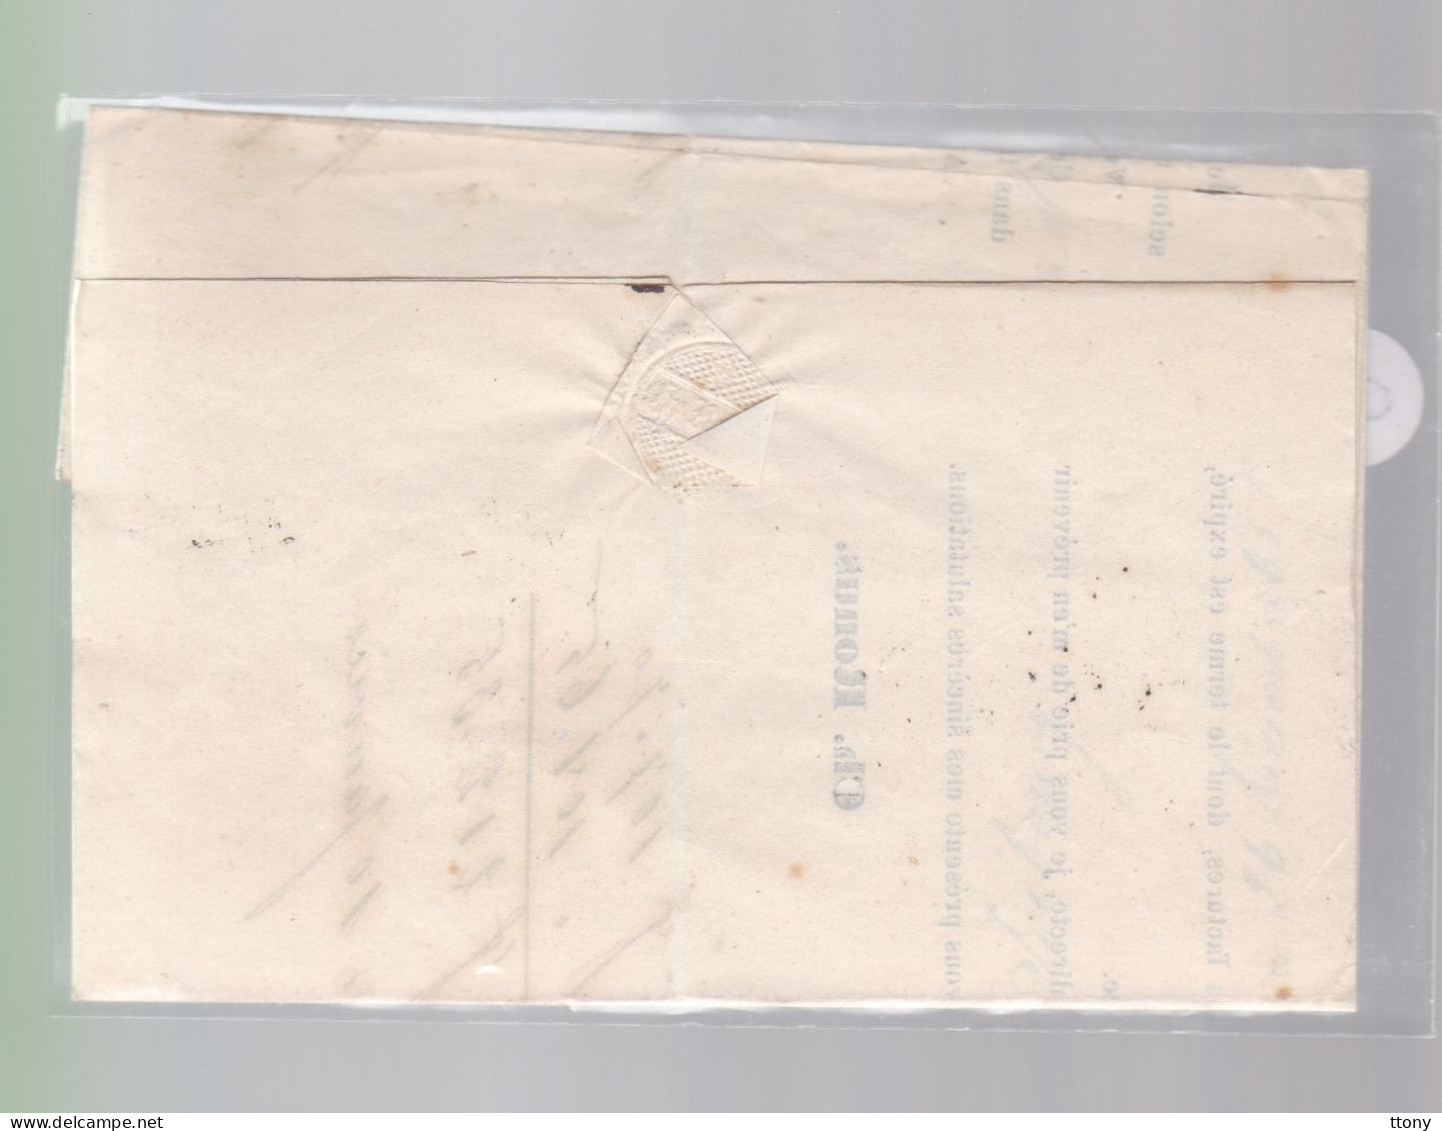 Un Timbre N° 31  10 C  Franco  Suisse  Sur Lettre  Cachet   Basel    Facture   1865   Destination Fribourg - Storia Postale